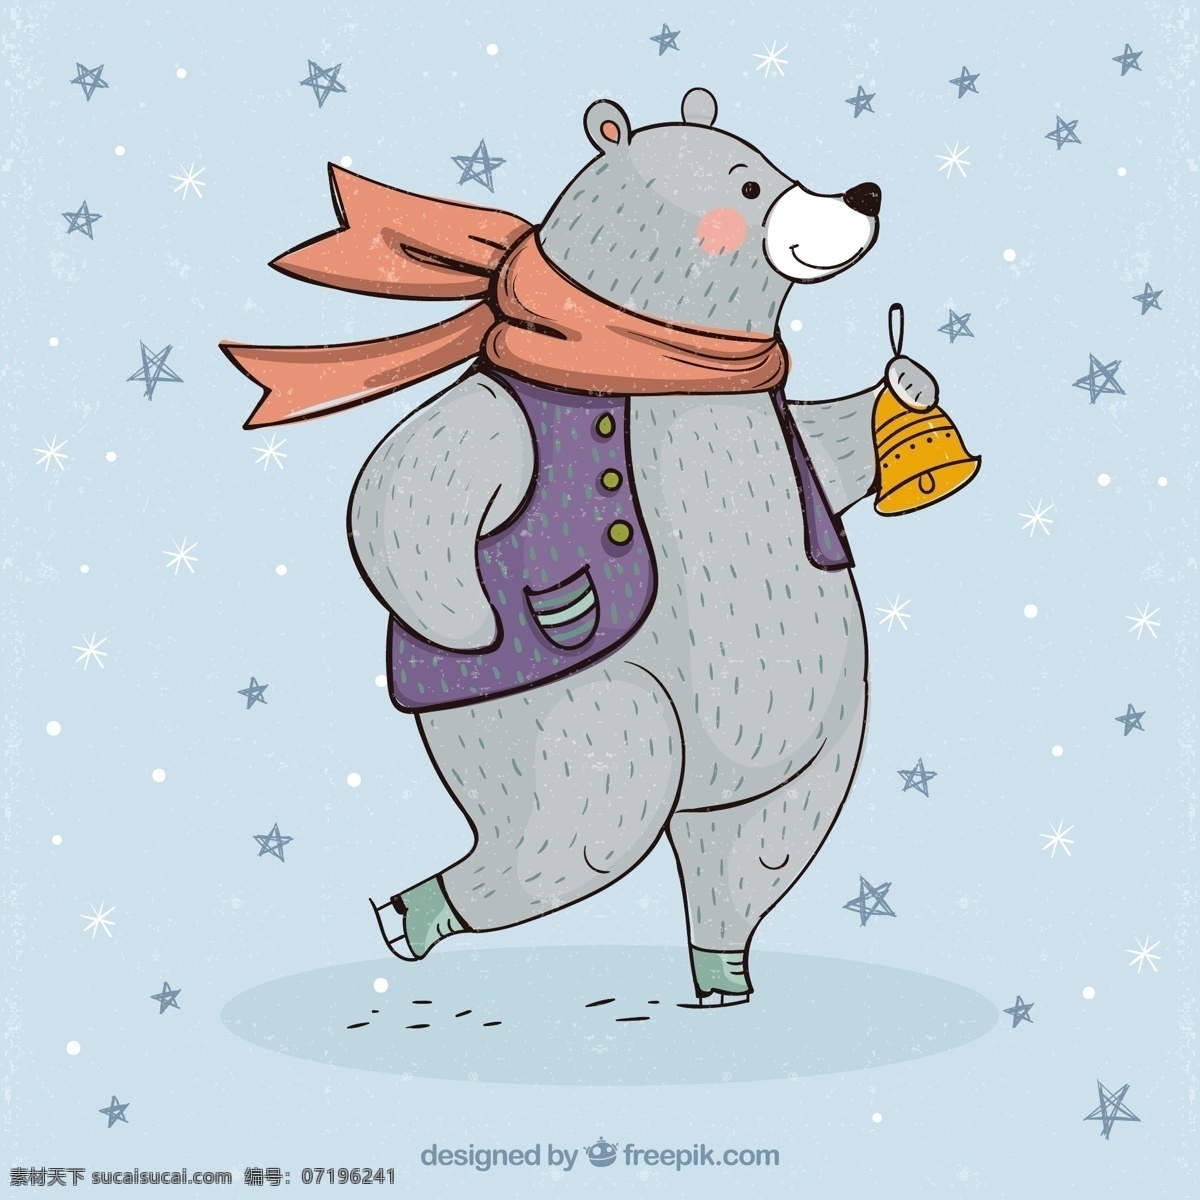 憨憨 的卡 通 北极熊 可爱 卡通 卡哇伊 矢量素材 动物 小动物 创意设计 简约 创意 元素 生物元素 动物元素